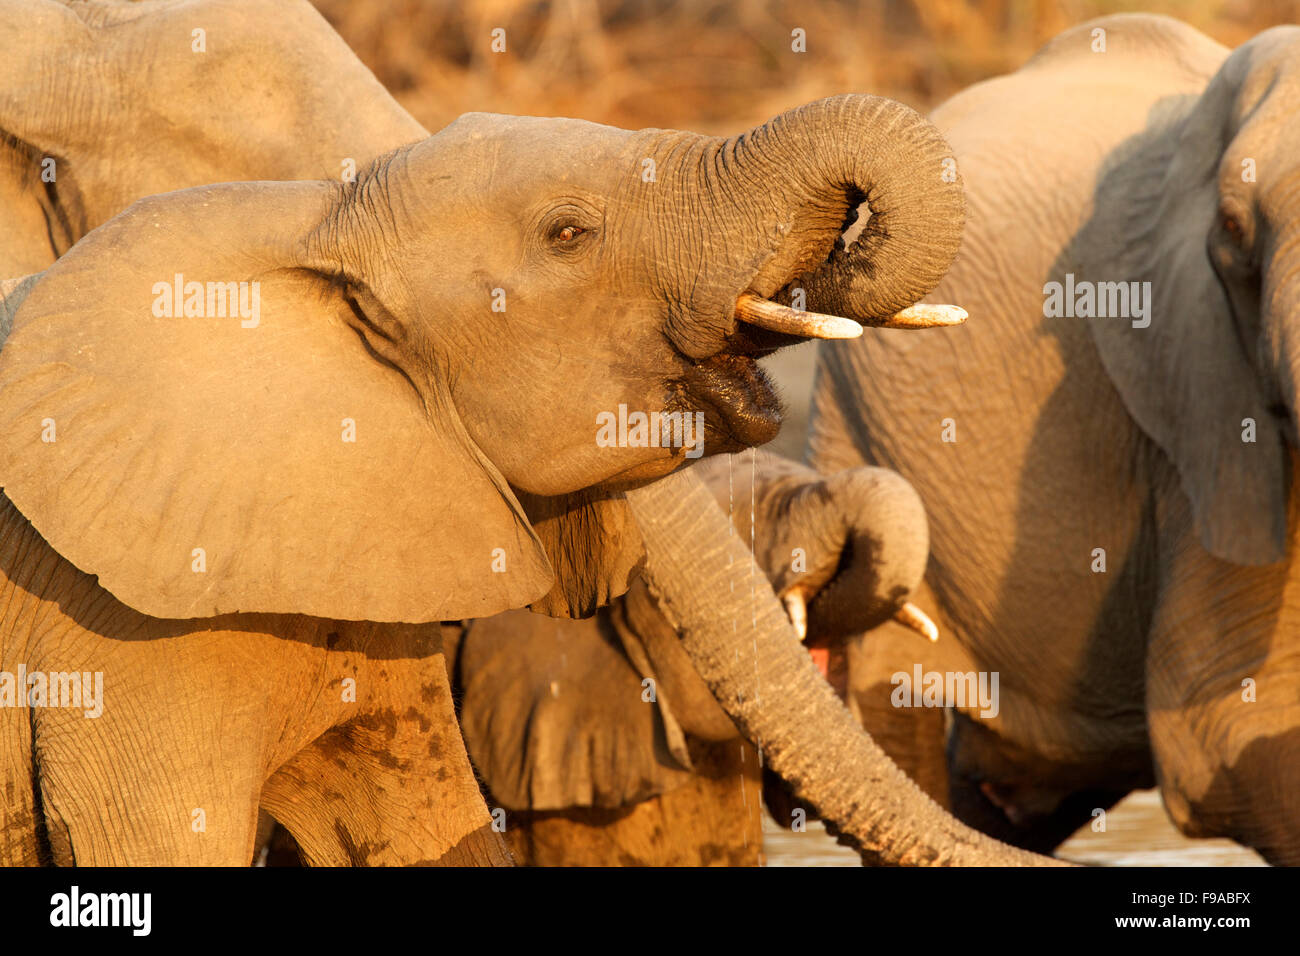 African elephant drinking water, Mana Pools, Zimbabwe Stock Photo